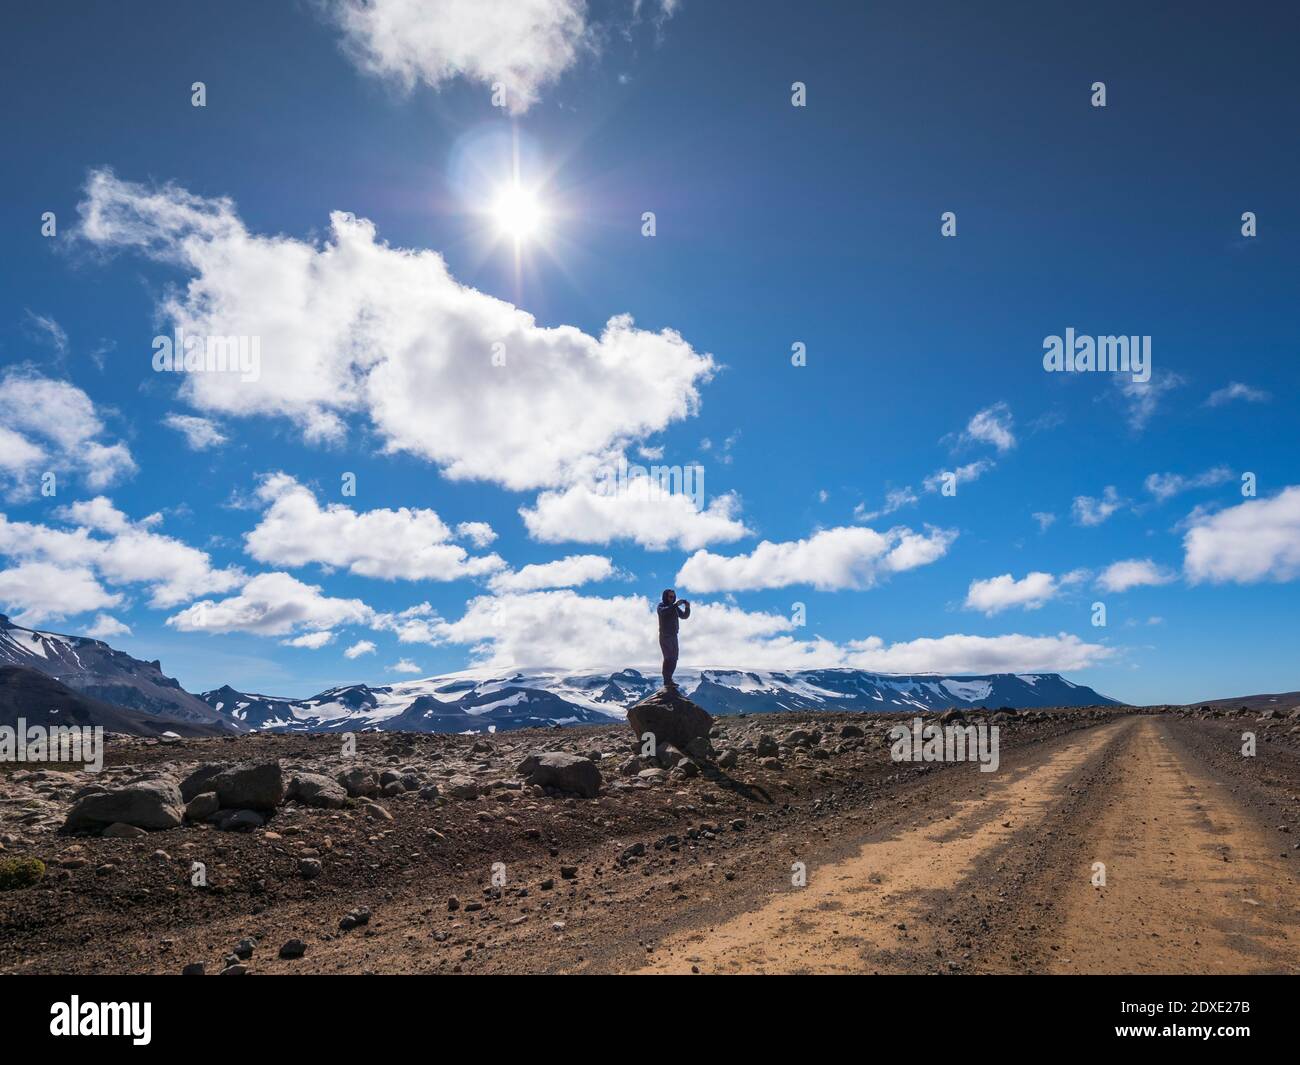 Mâle explorateur debout sur un objet de roche contre un ciel nuageux, Langjokull, Islande Banque D'Images